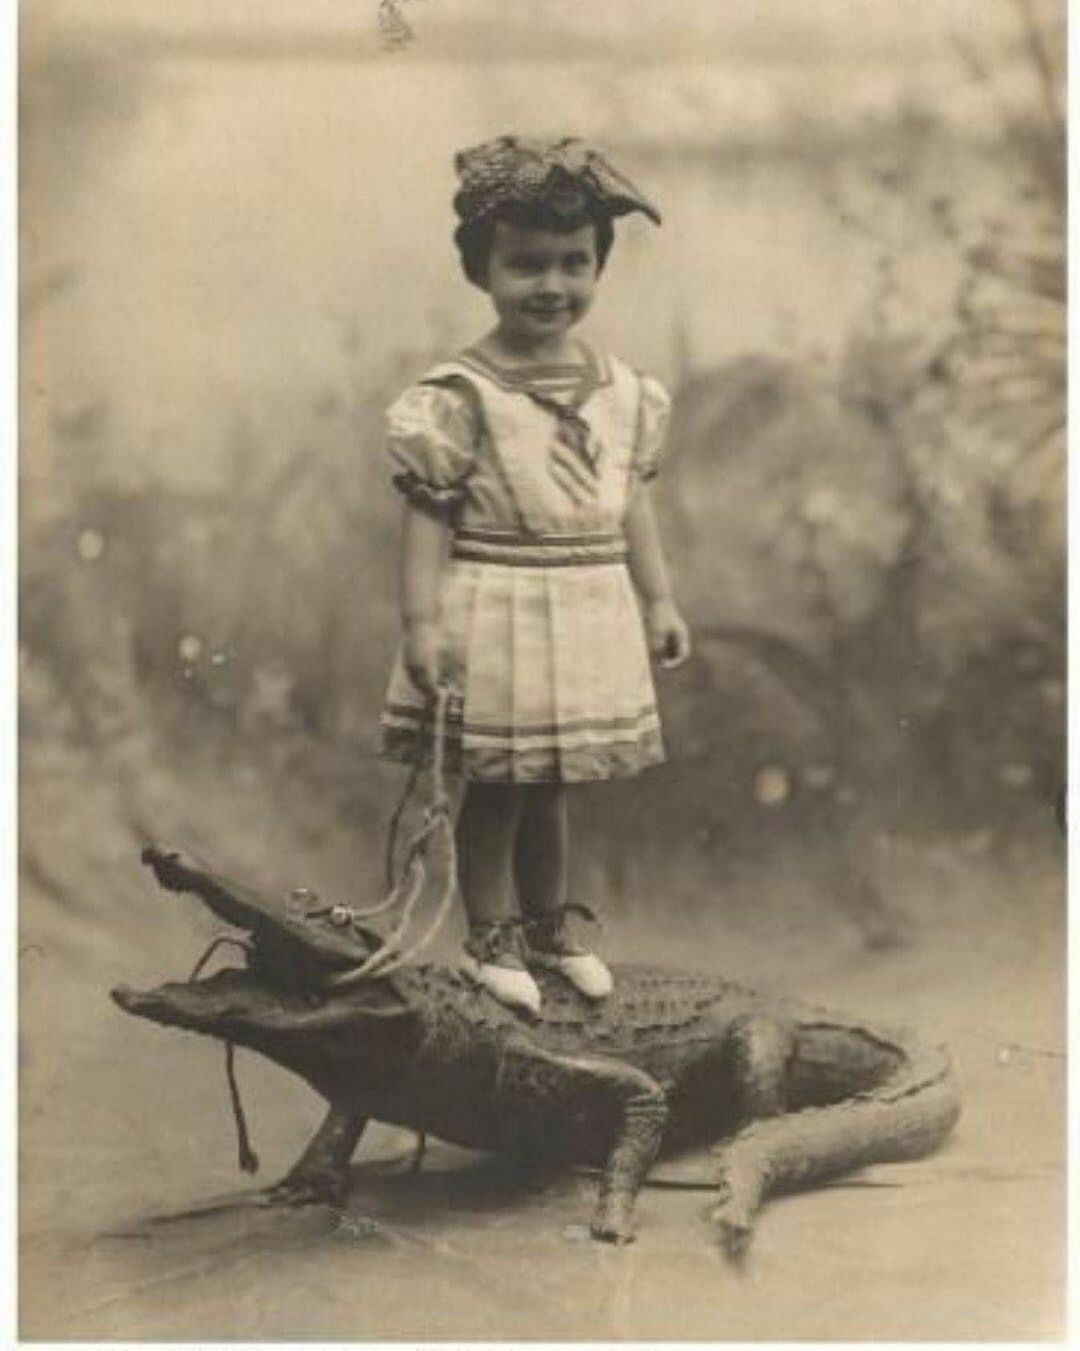 dallas mercier conklin debout sur un alligator empaillé, 1908